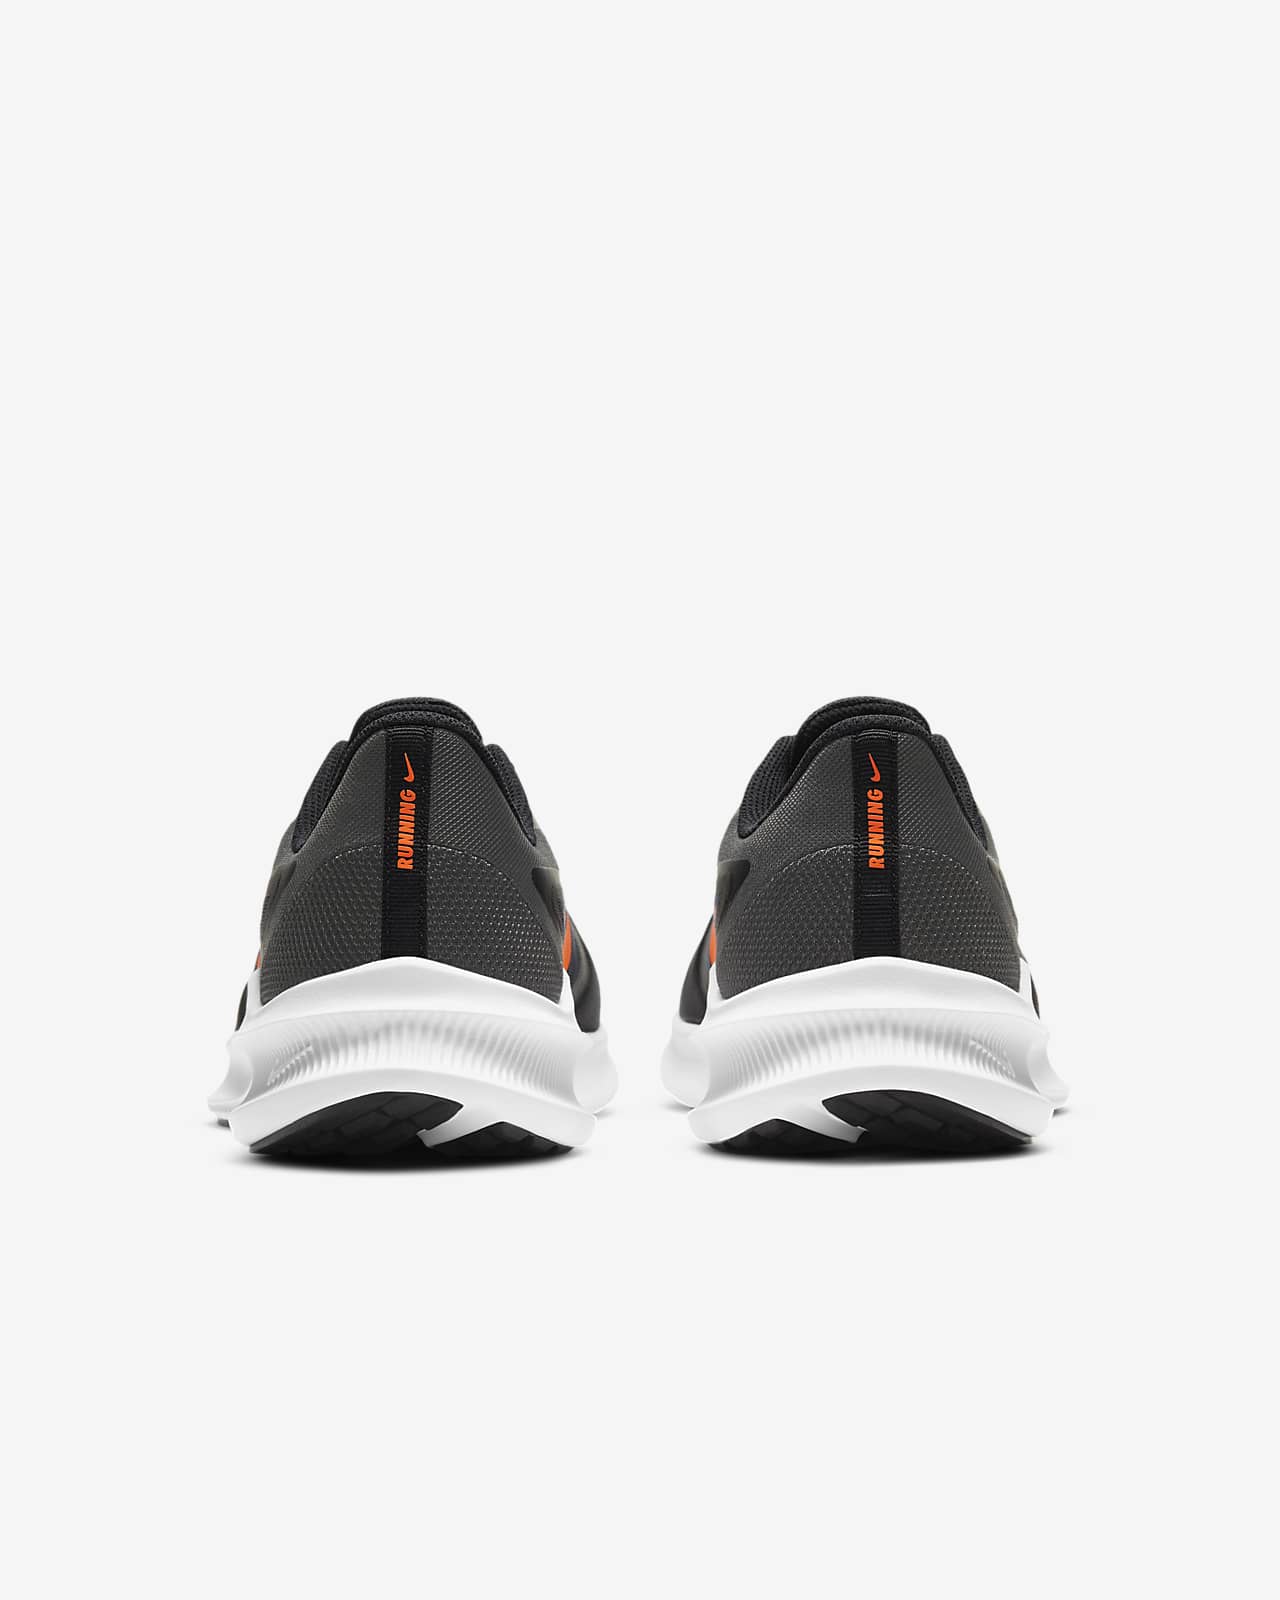 Nike Downshifter 10 Men's Running Shoe 